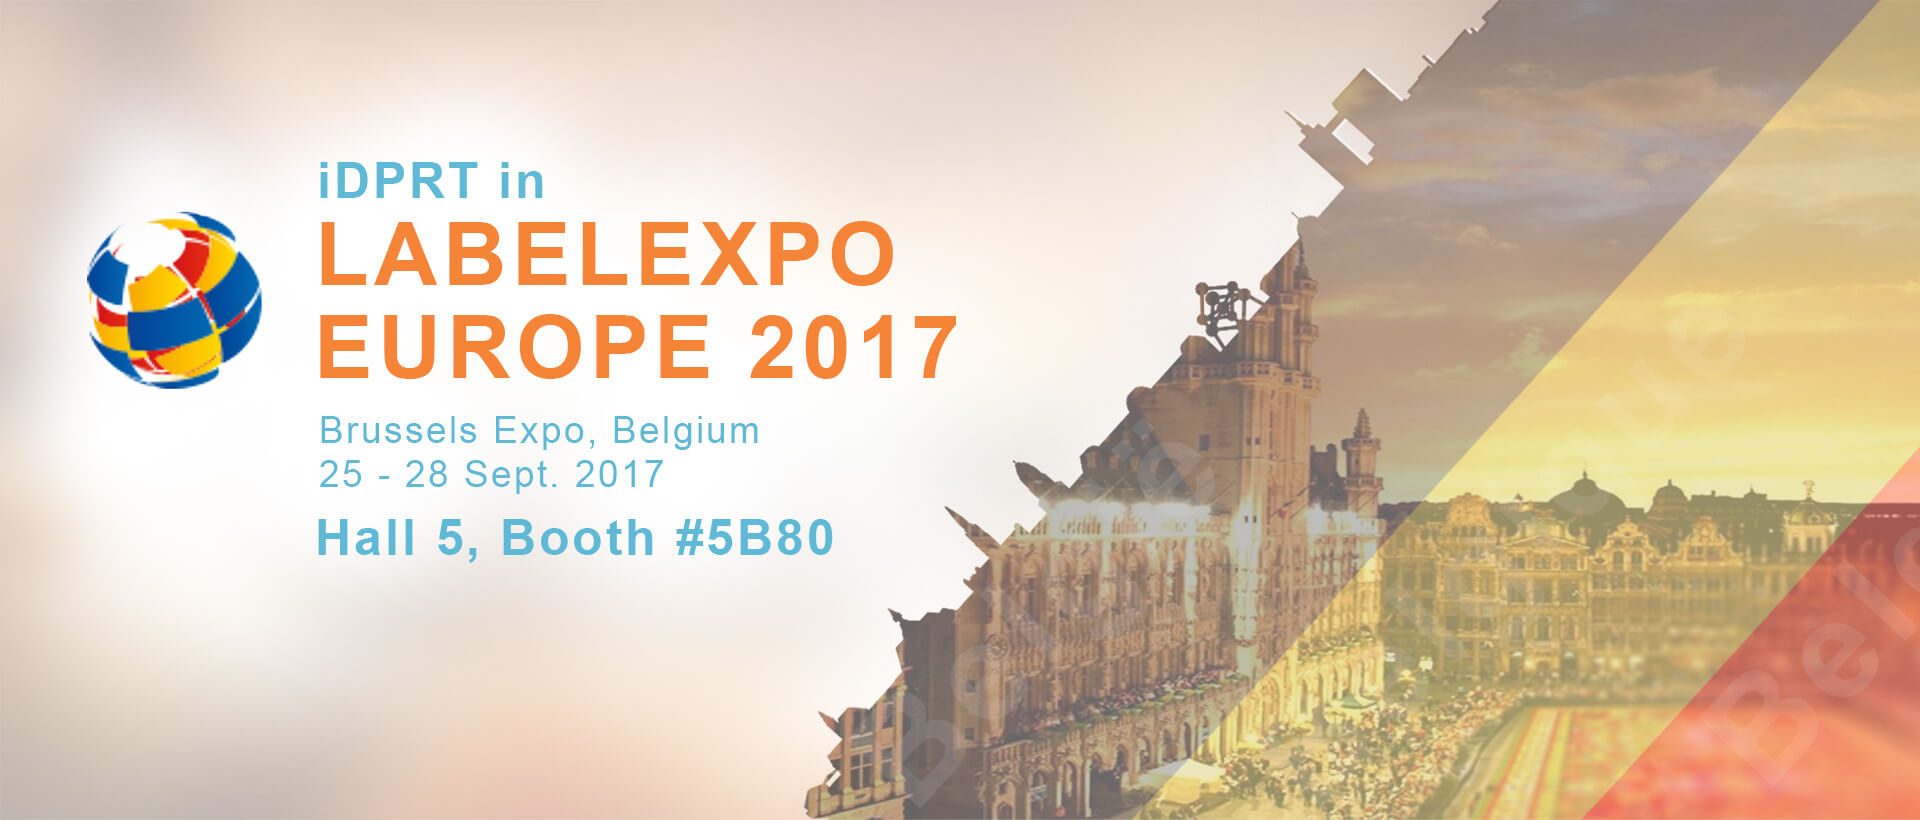 Meet iDPRT in Labelexpo Europe 2017